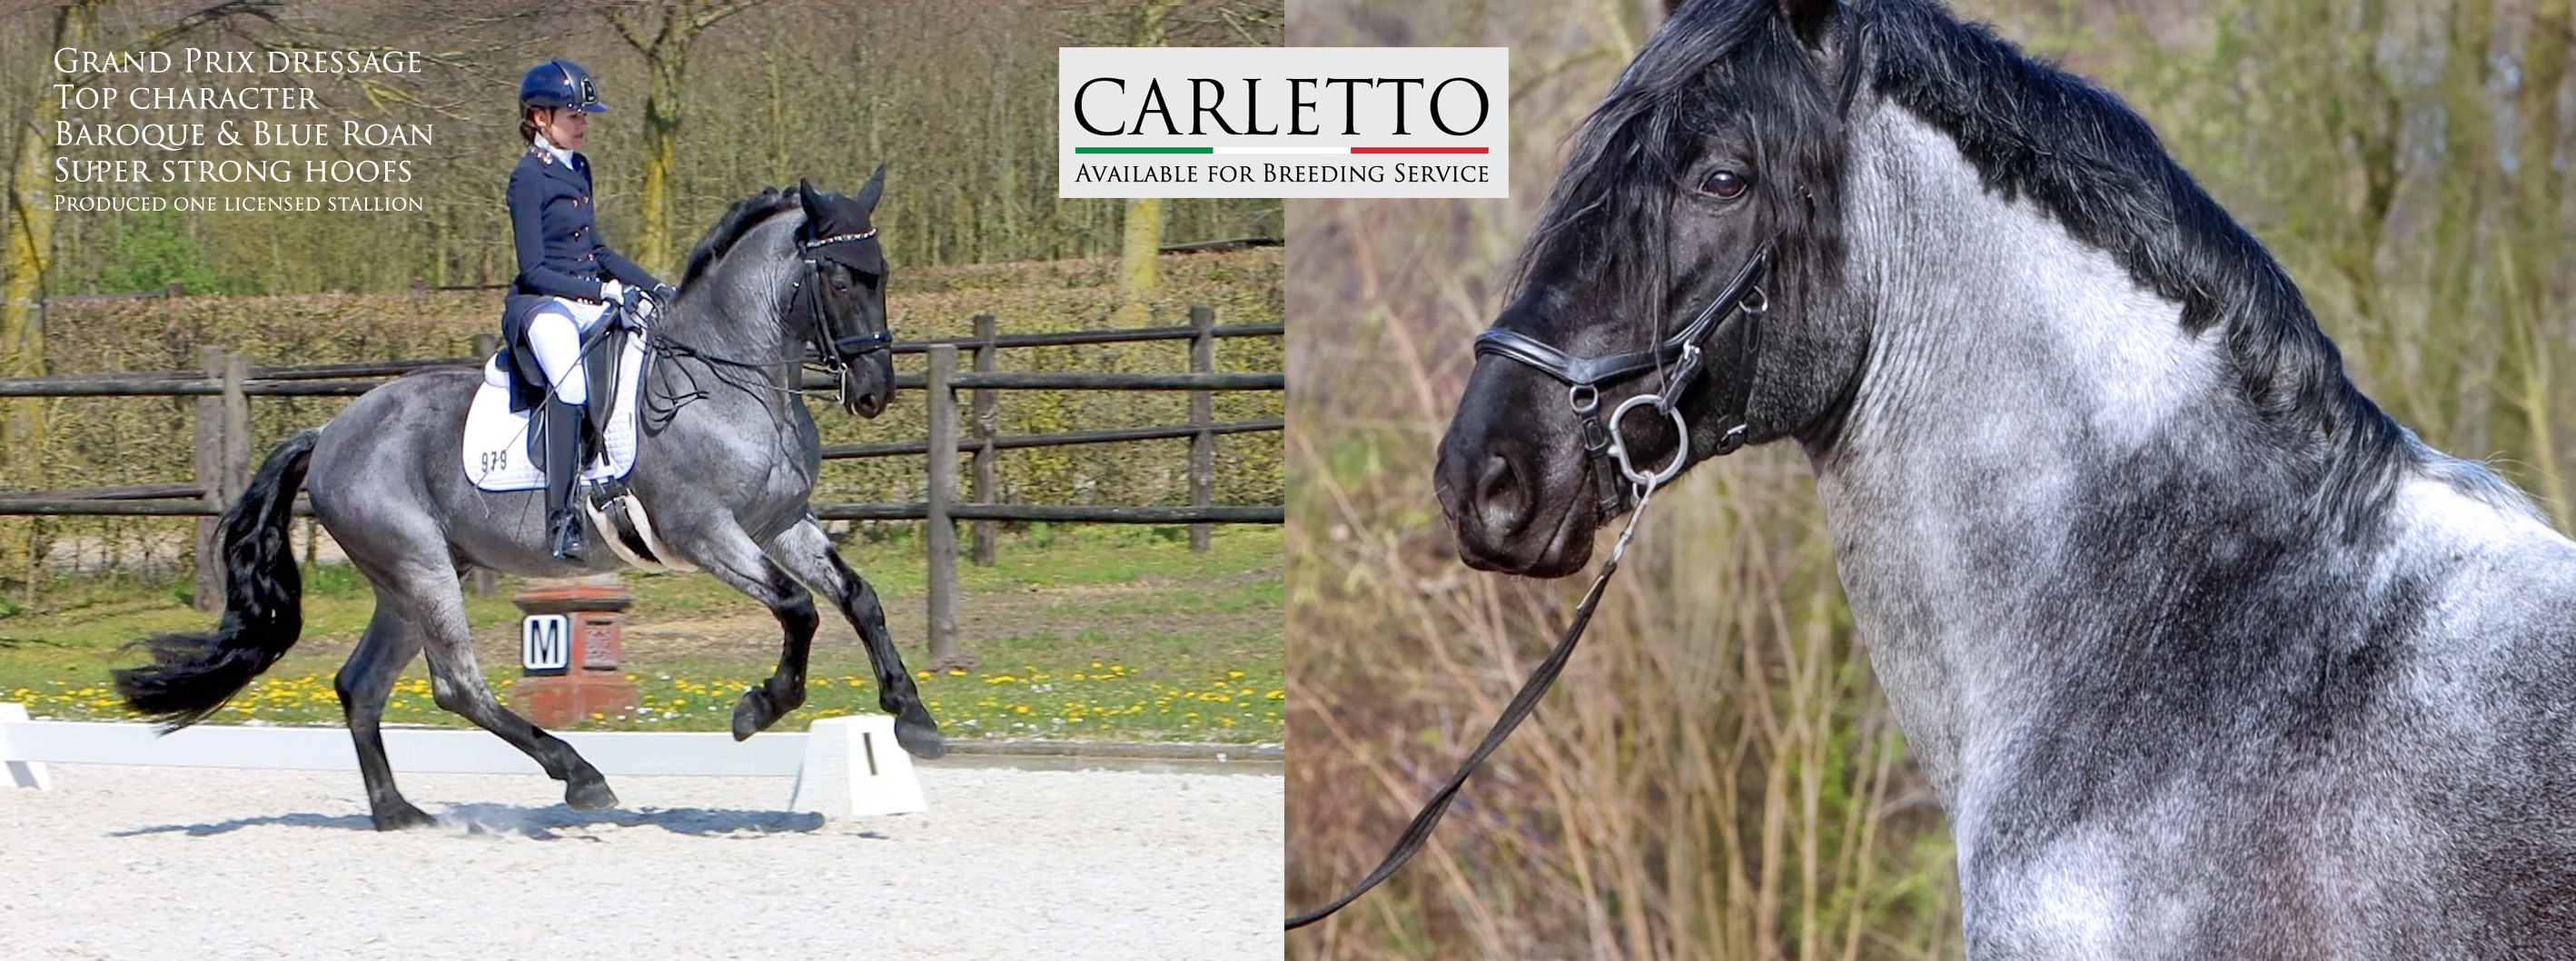 Carletto - Dressage Stallion